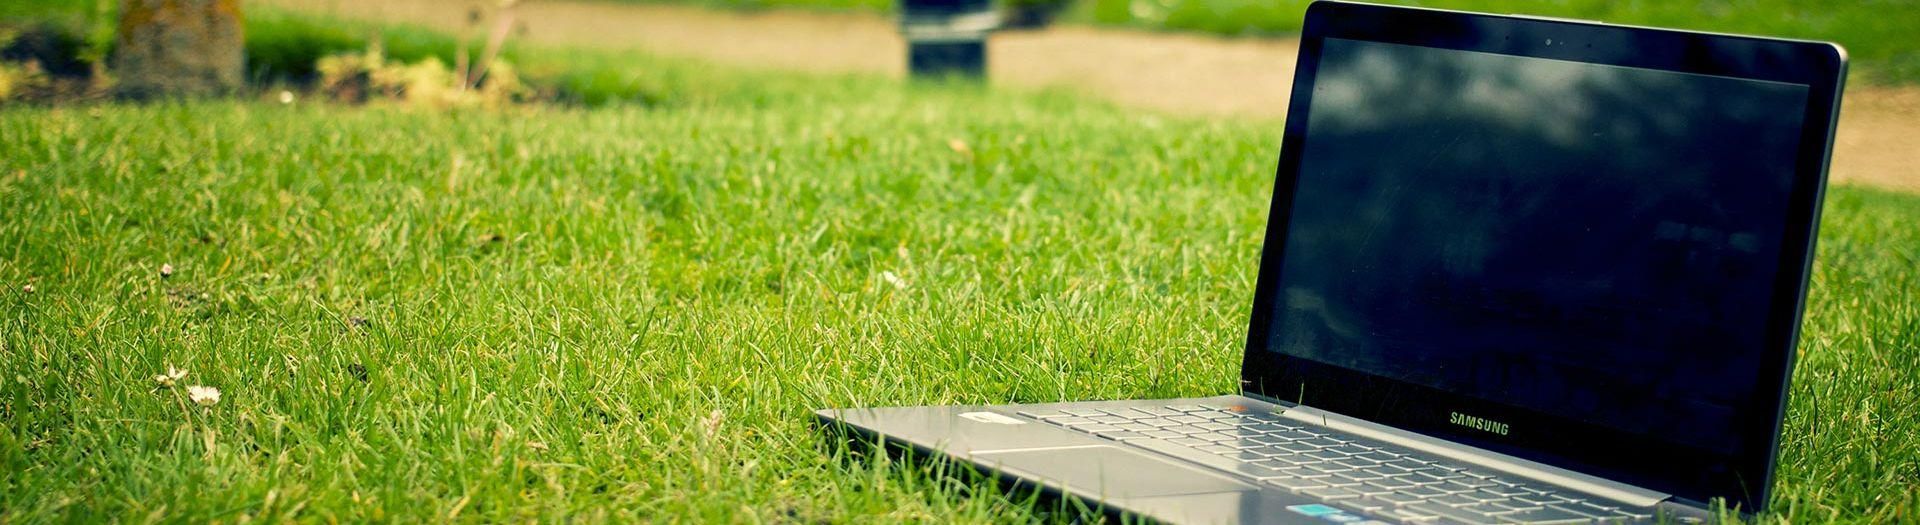 laptop-notebook-grass-meadow-9b558d75 Waage System